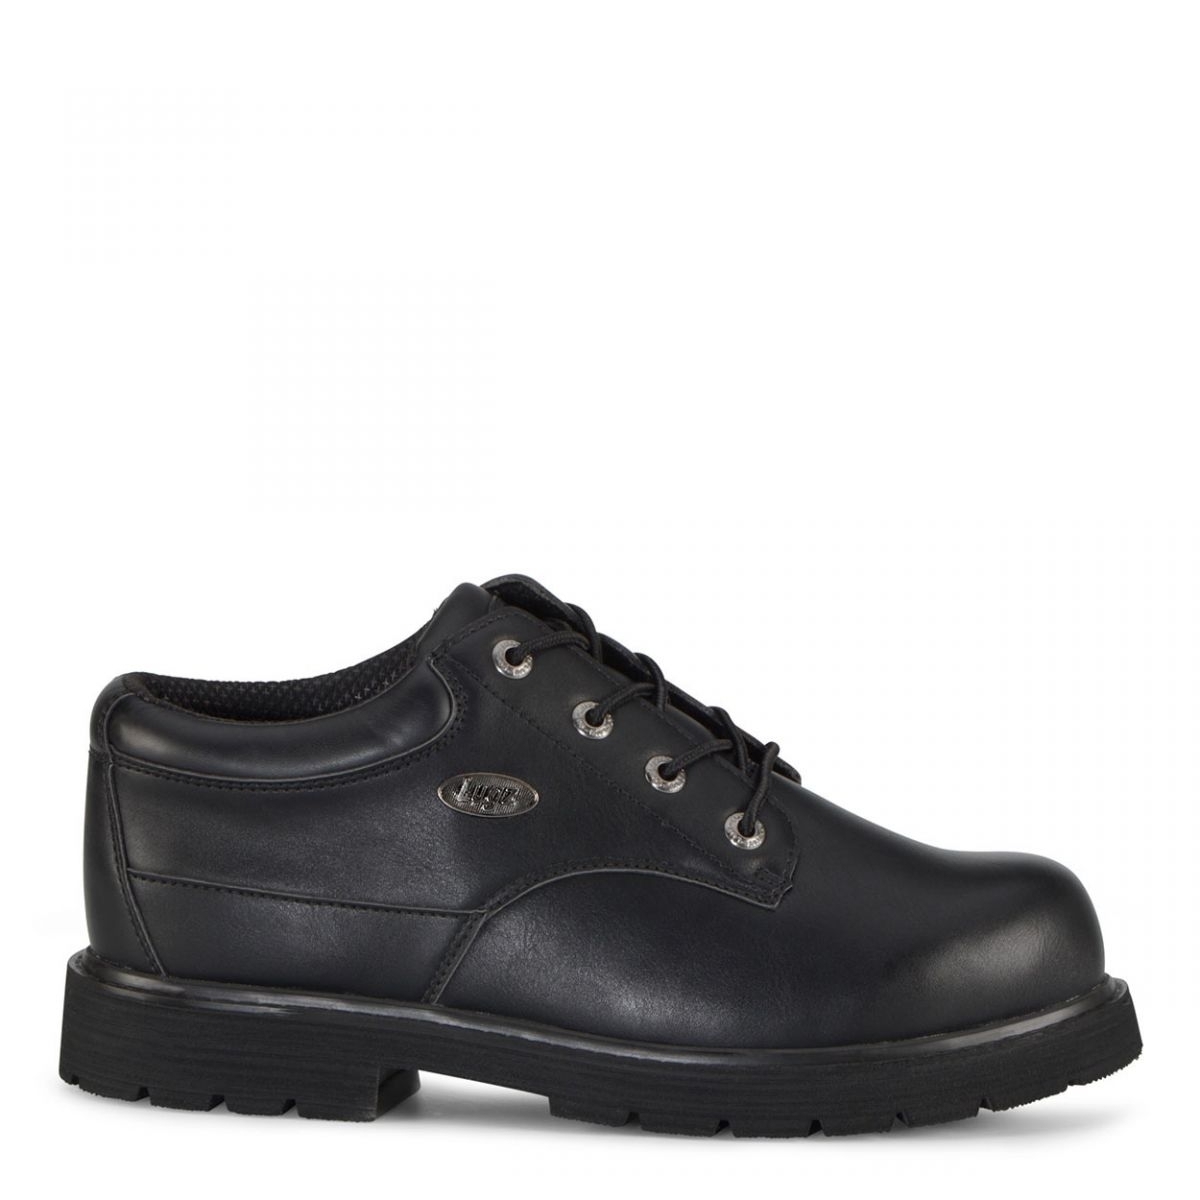 Lugz Men's Drifter Lo Lx Oxford Boot Black - MDRLXLV-001 BLACK - BLACK, 12